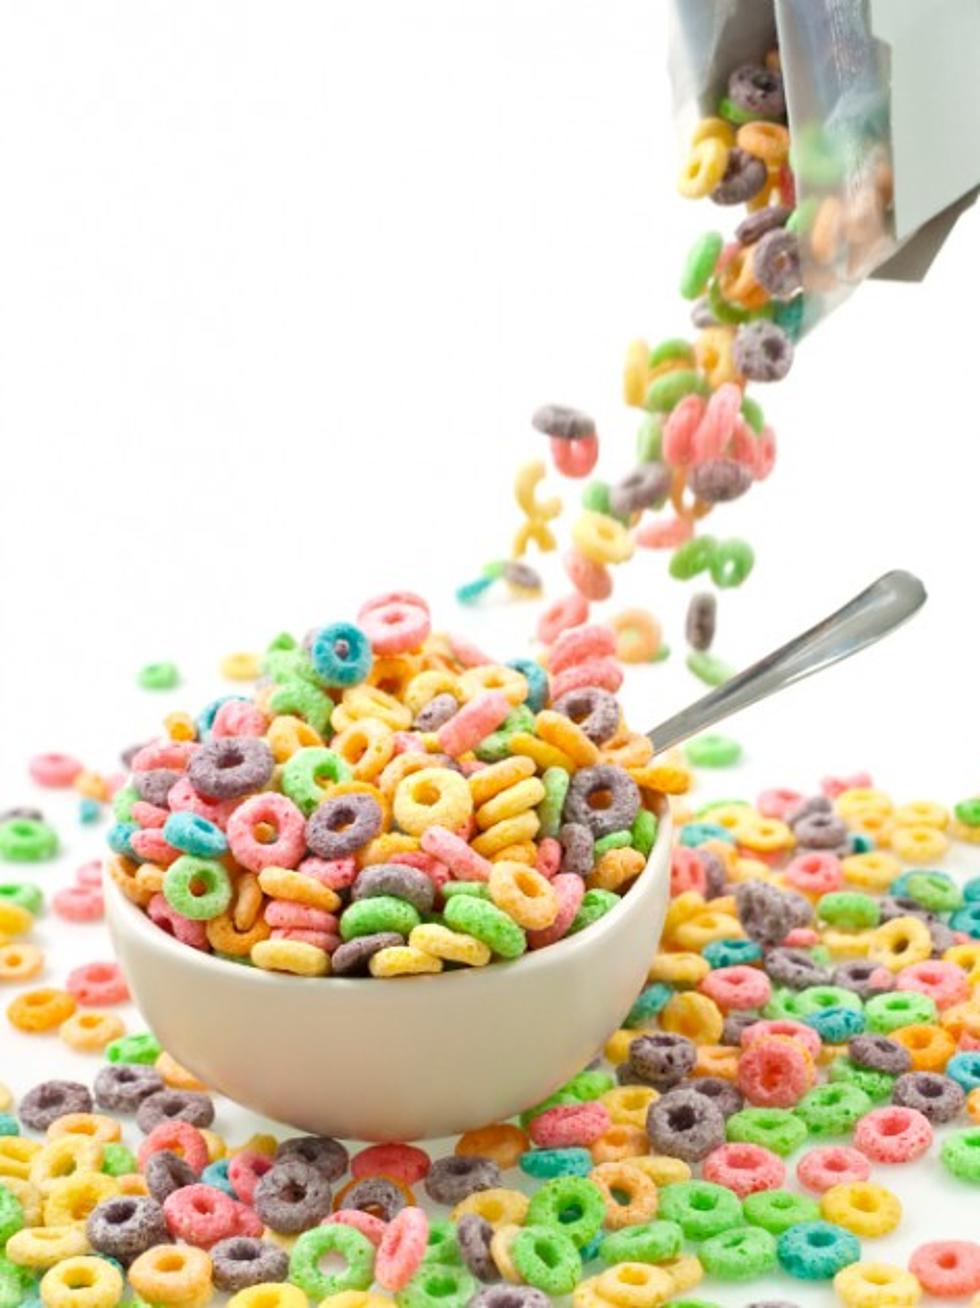 Breakfast Cereals Get Healthier